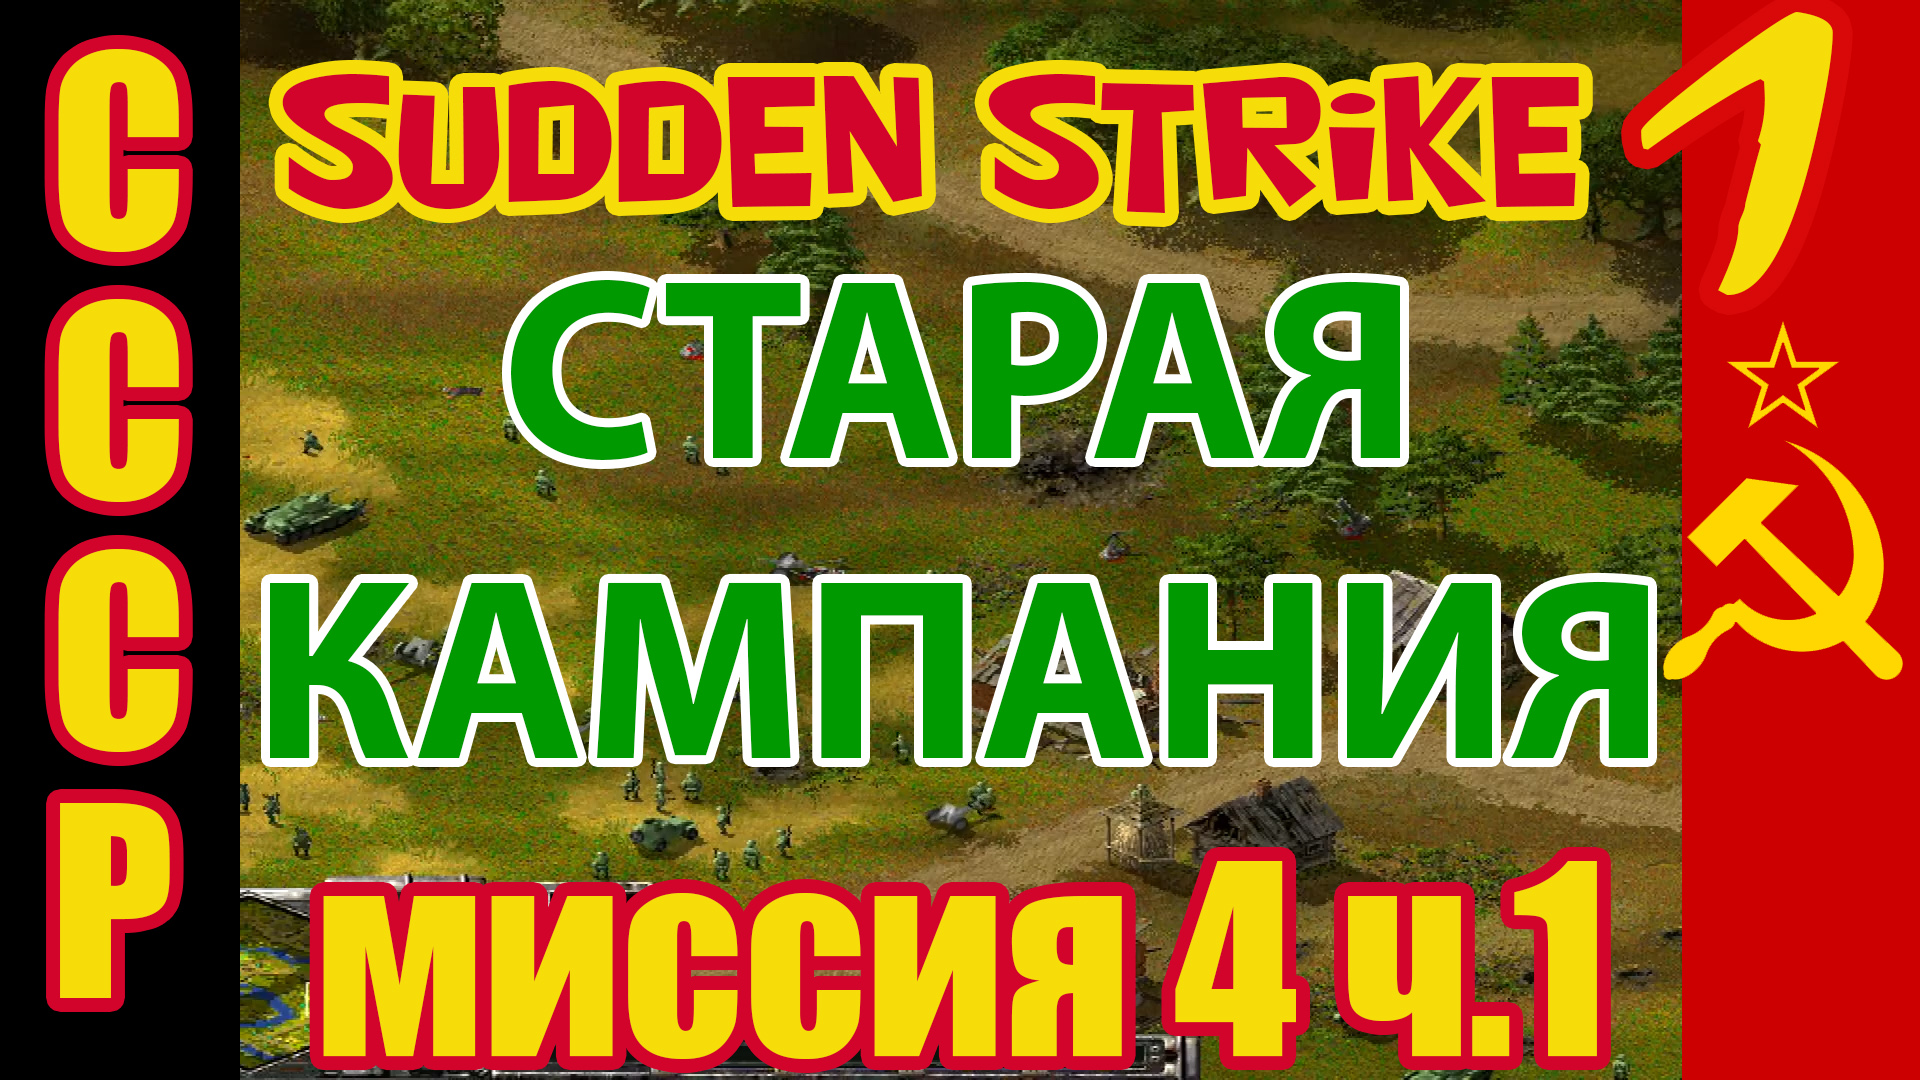 Противостояние 3 [Sudden Strike] прохождение кампания за СССР (Миссия №4  Ельня ) часть 1